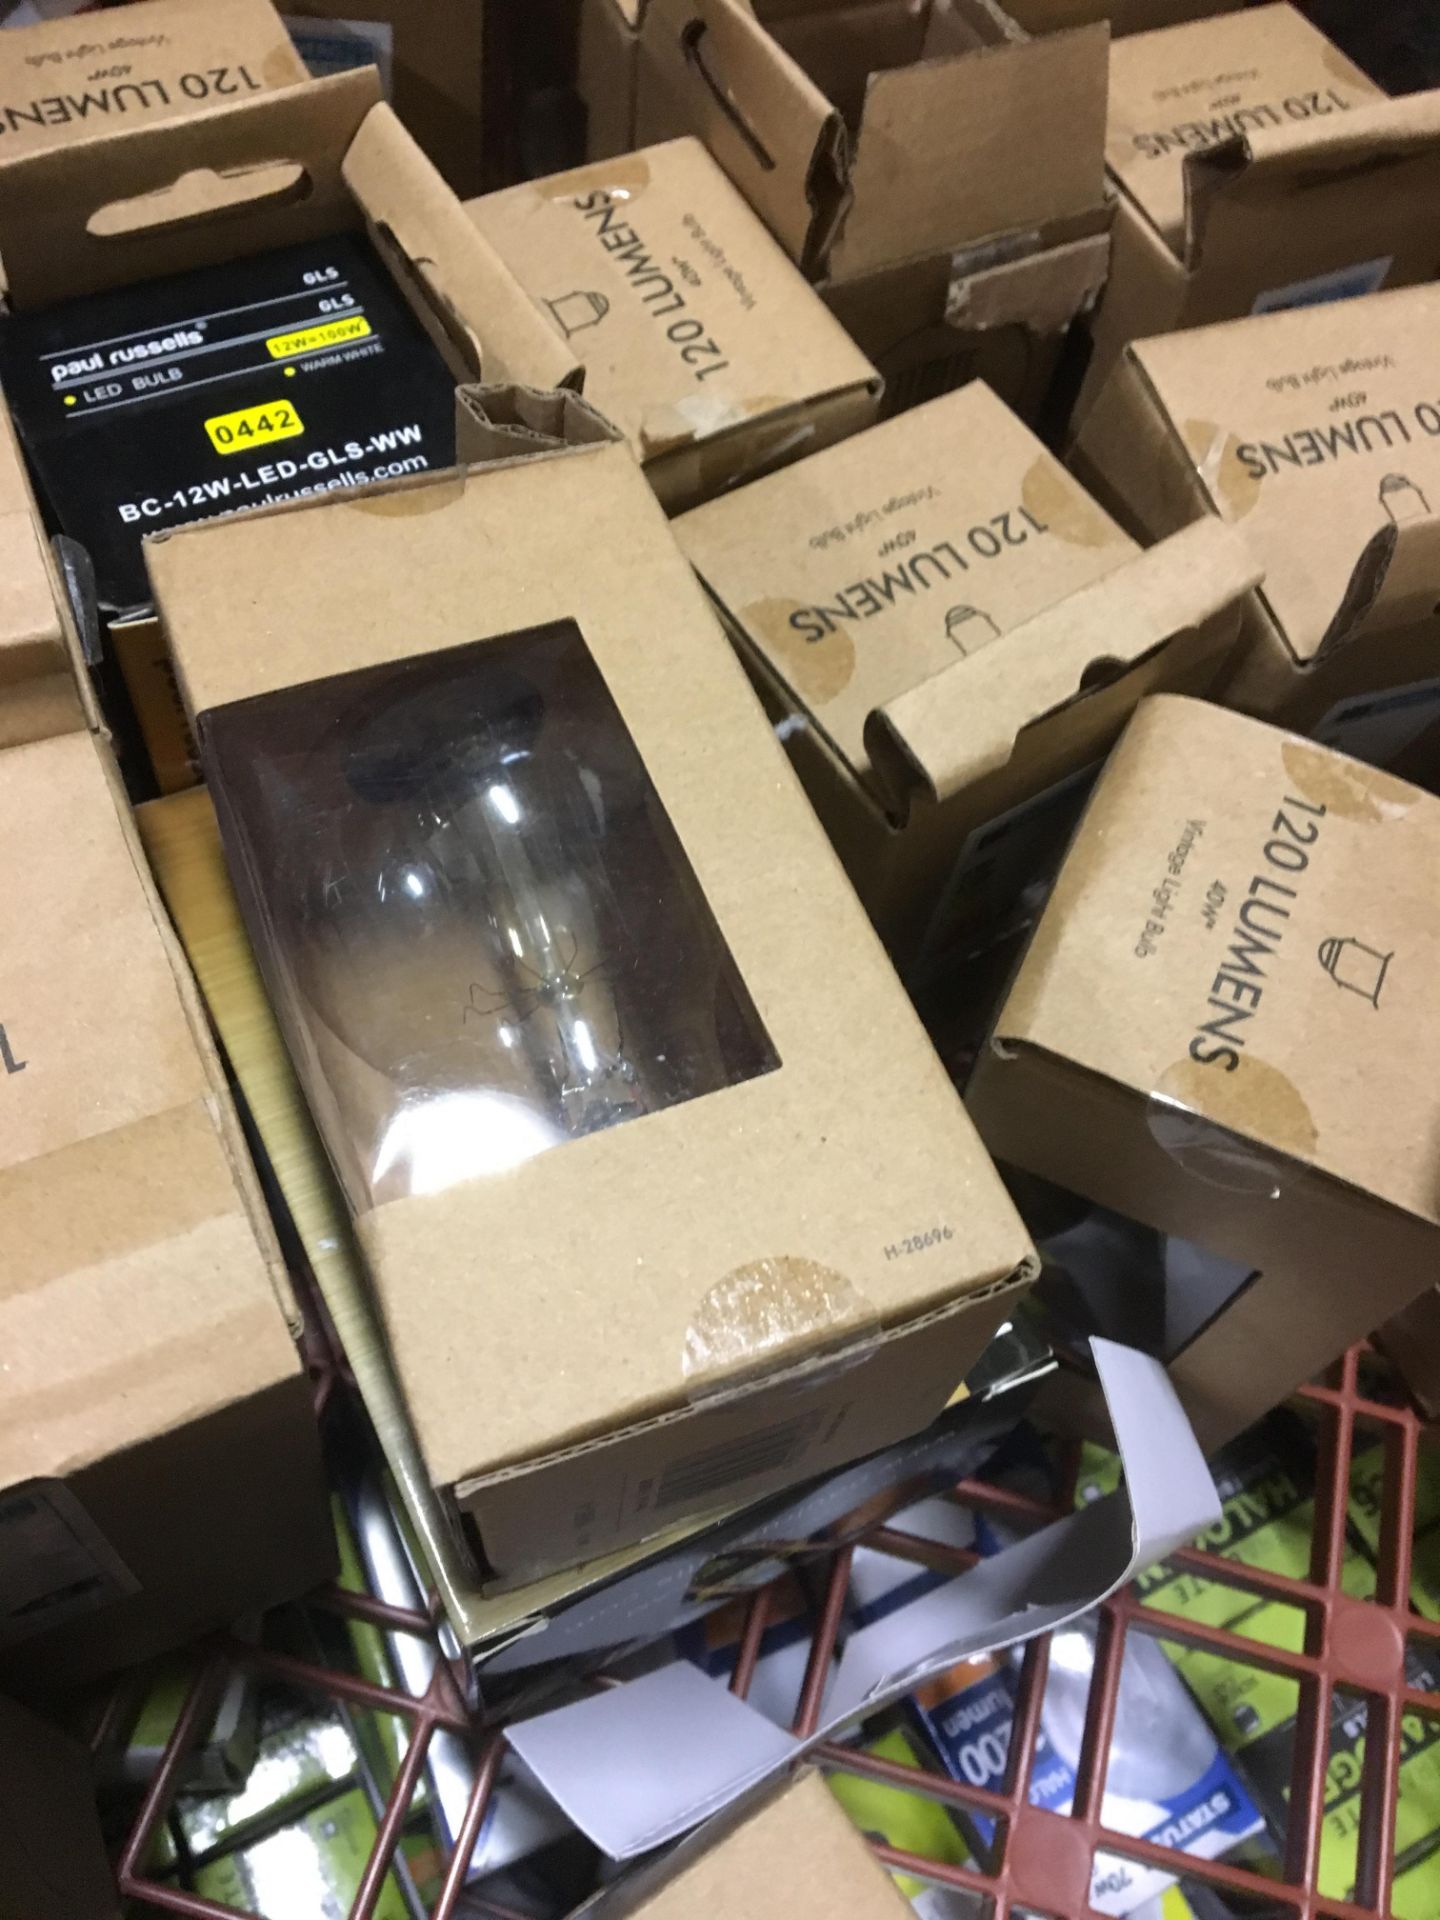 Approx 100 vairous light bulbs